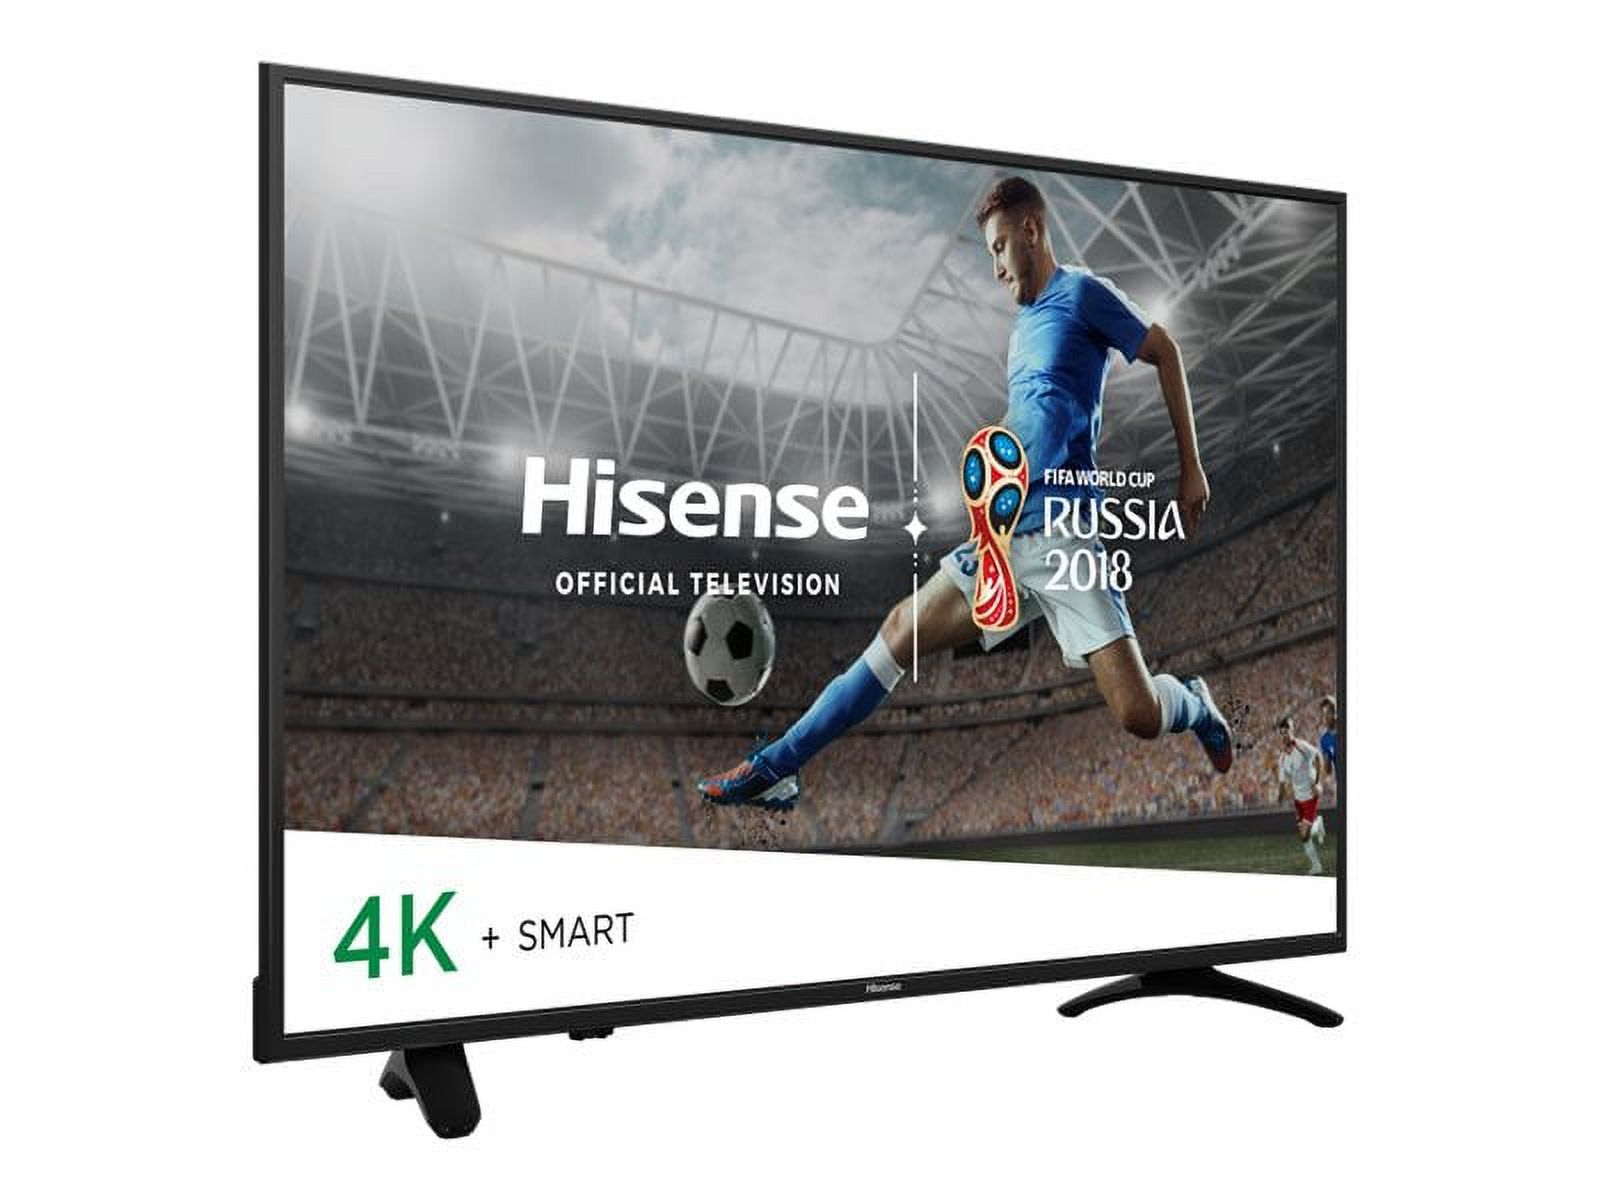 Hisense 65H8E - 65" Diagonal Class (64.5" viewable) - H8 Series LED-backlit LCD TV - Smart TV - 4K UHD (2160p) 3840 x 2160 - HDR - direct-lit LED - image 2 of 8